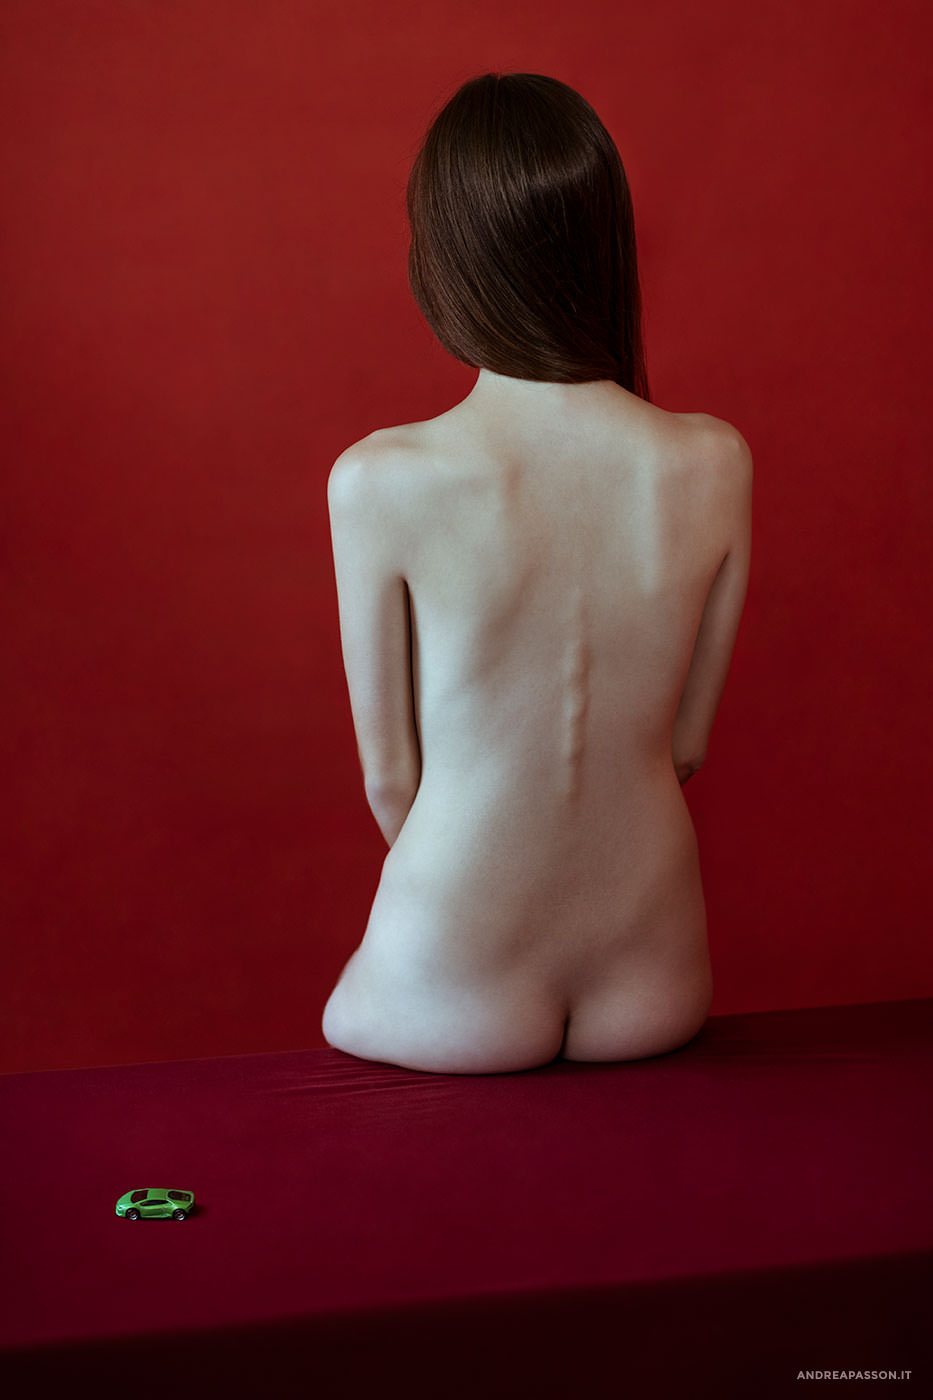 The Braque Theory - Fotografia Nude Art - Fotografo di Treviso - Fotografia Nudo Artistico